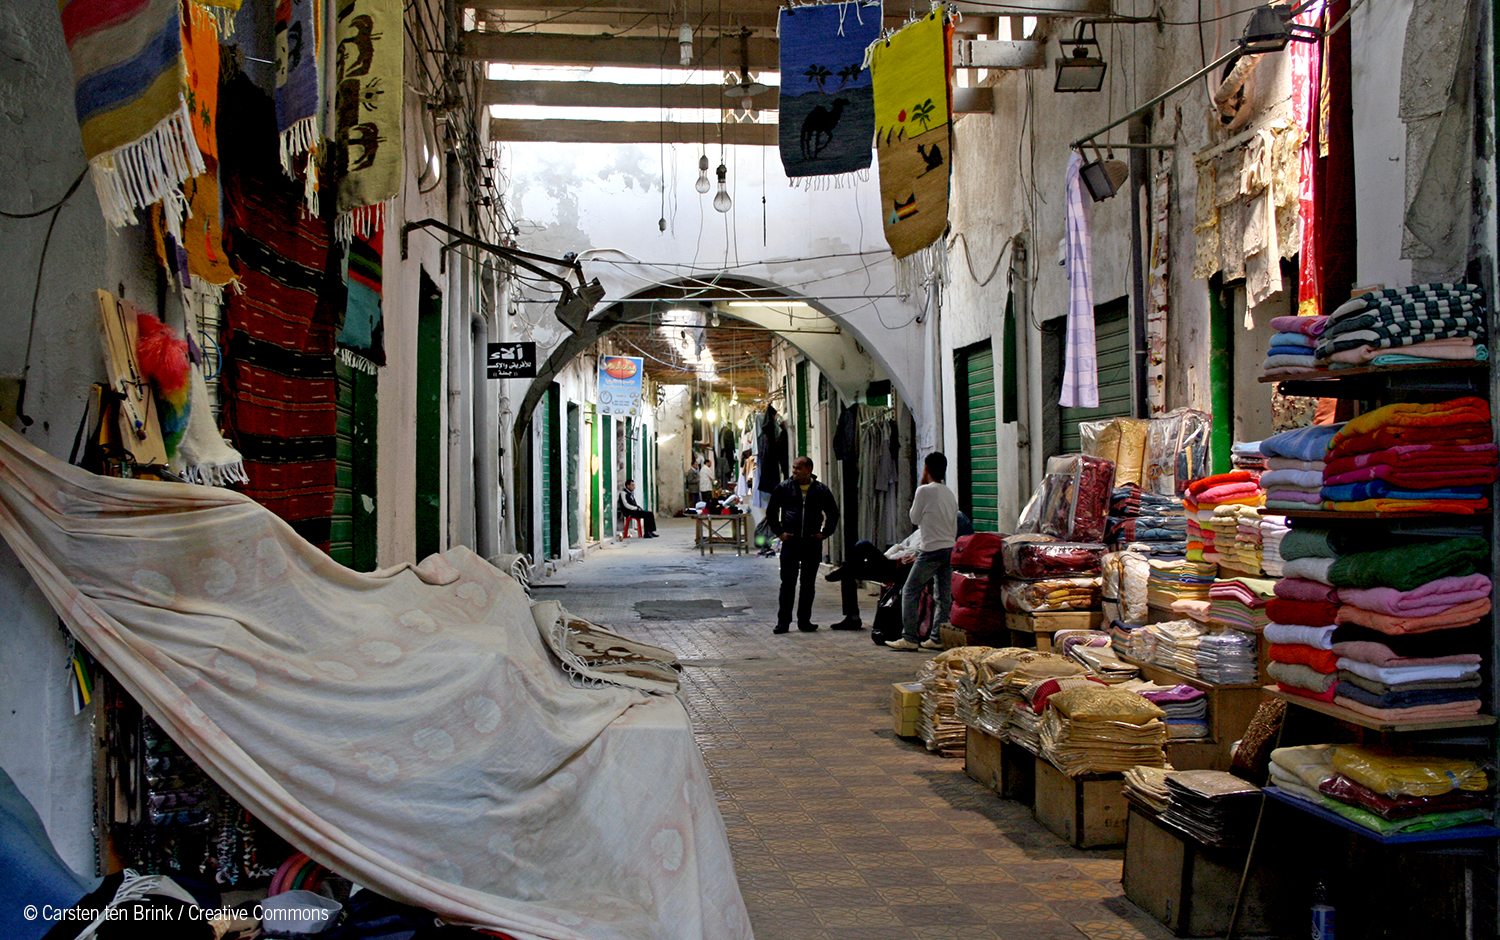 أزمة أقتصادية داخل أسواق ليبيا تؤدي لكارثة